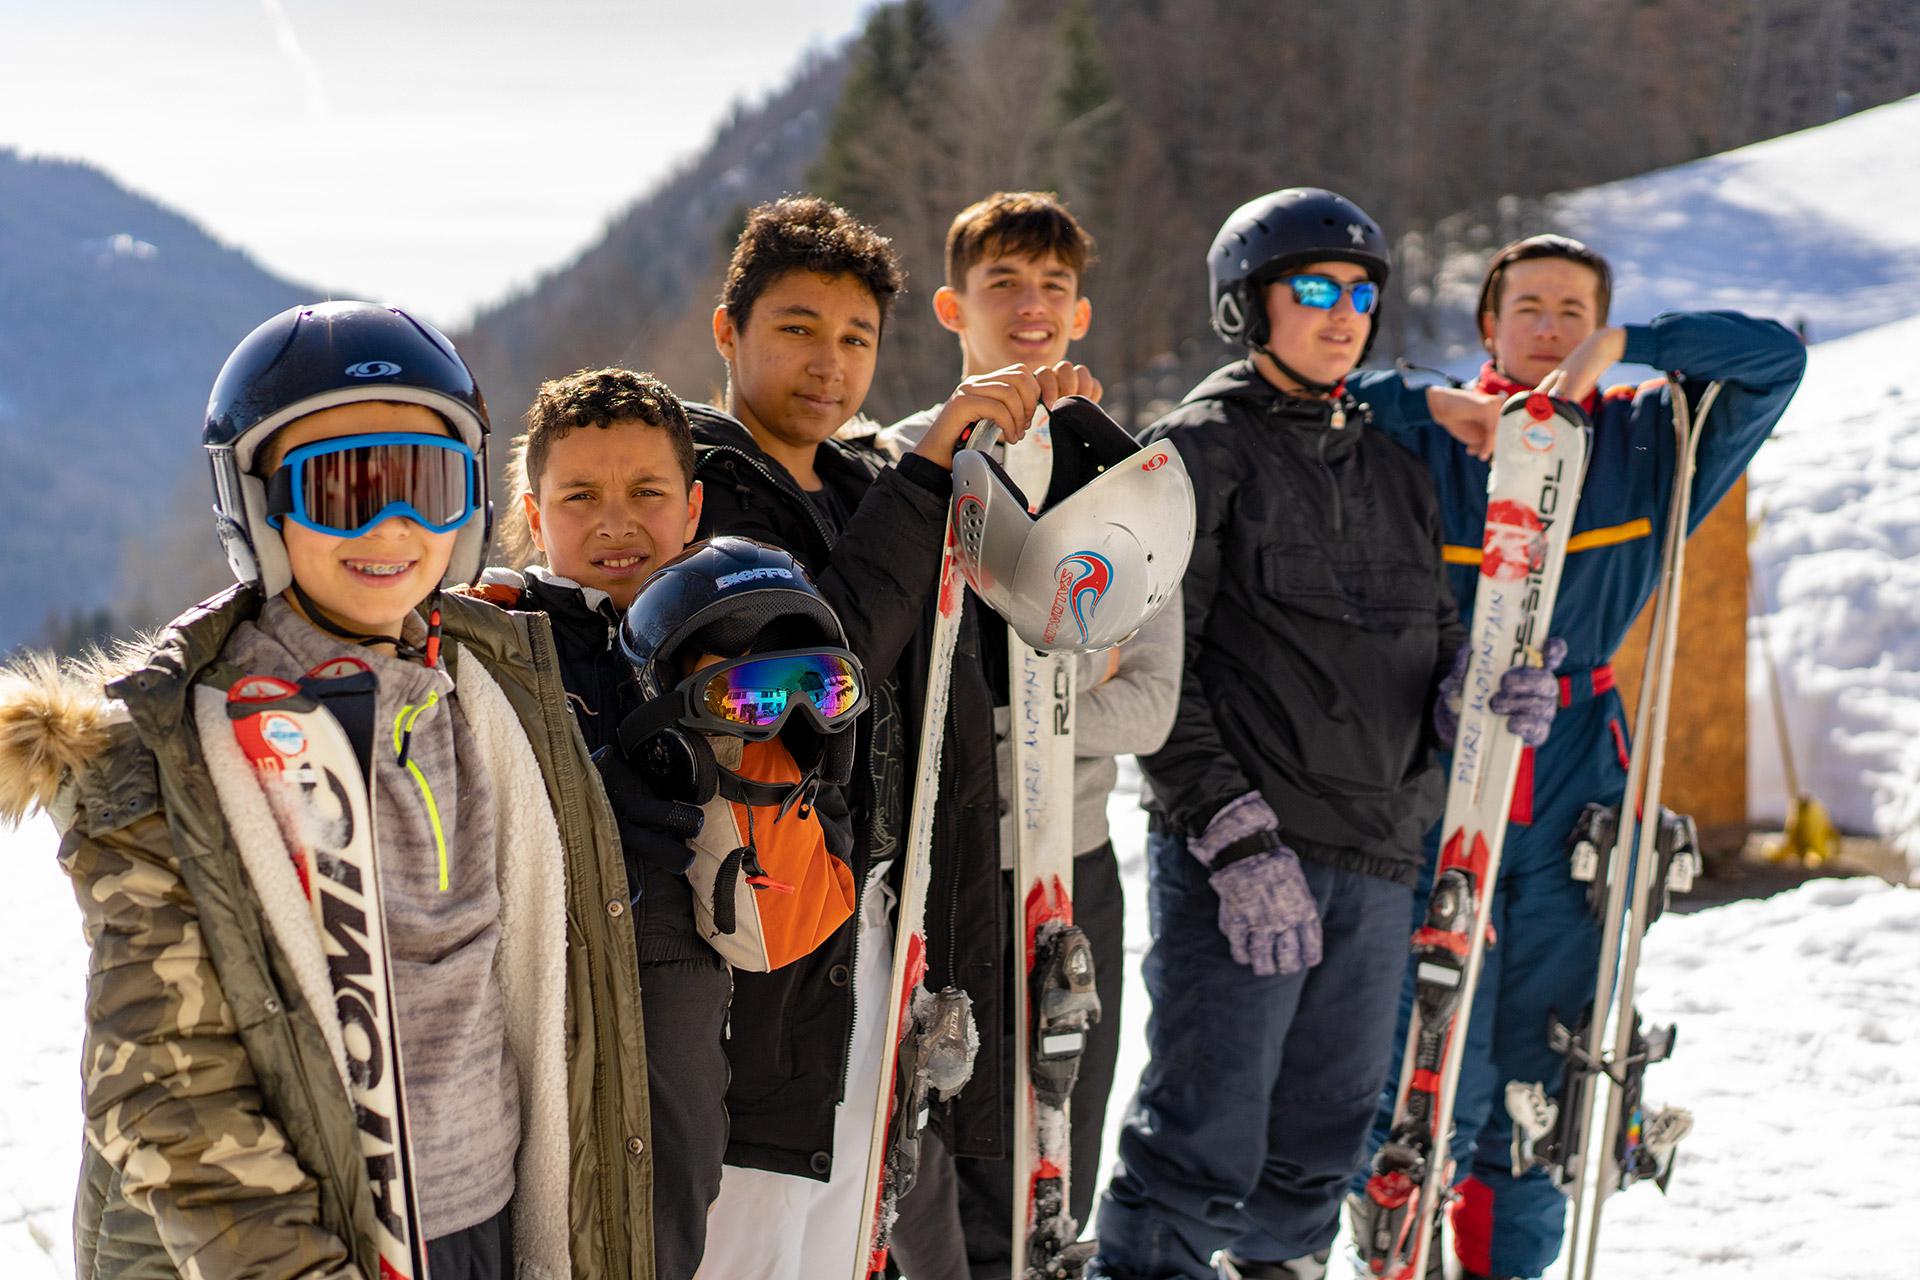 Les adolescents ont profité d'un séjour à la montagne pour faire du sport tous les jours et se faire des amis.